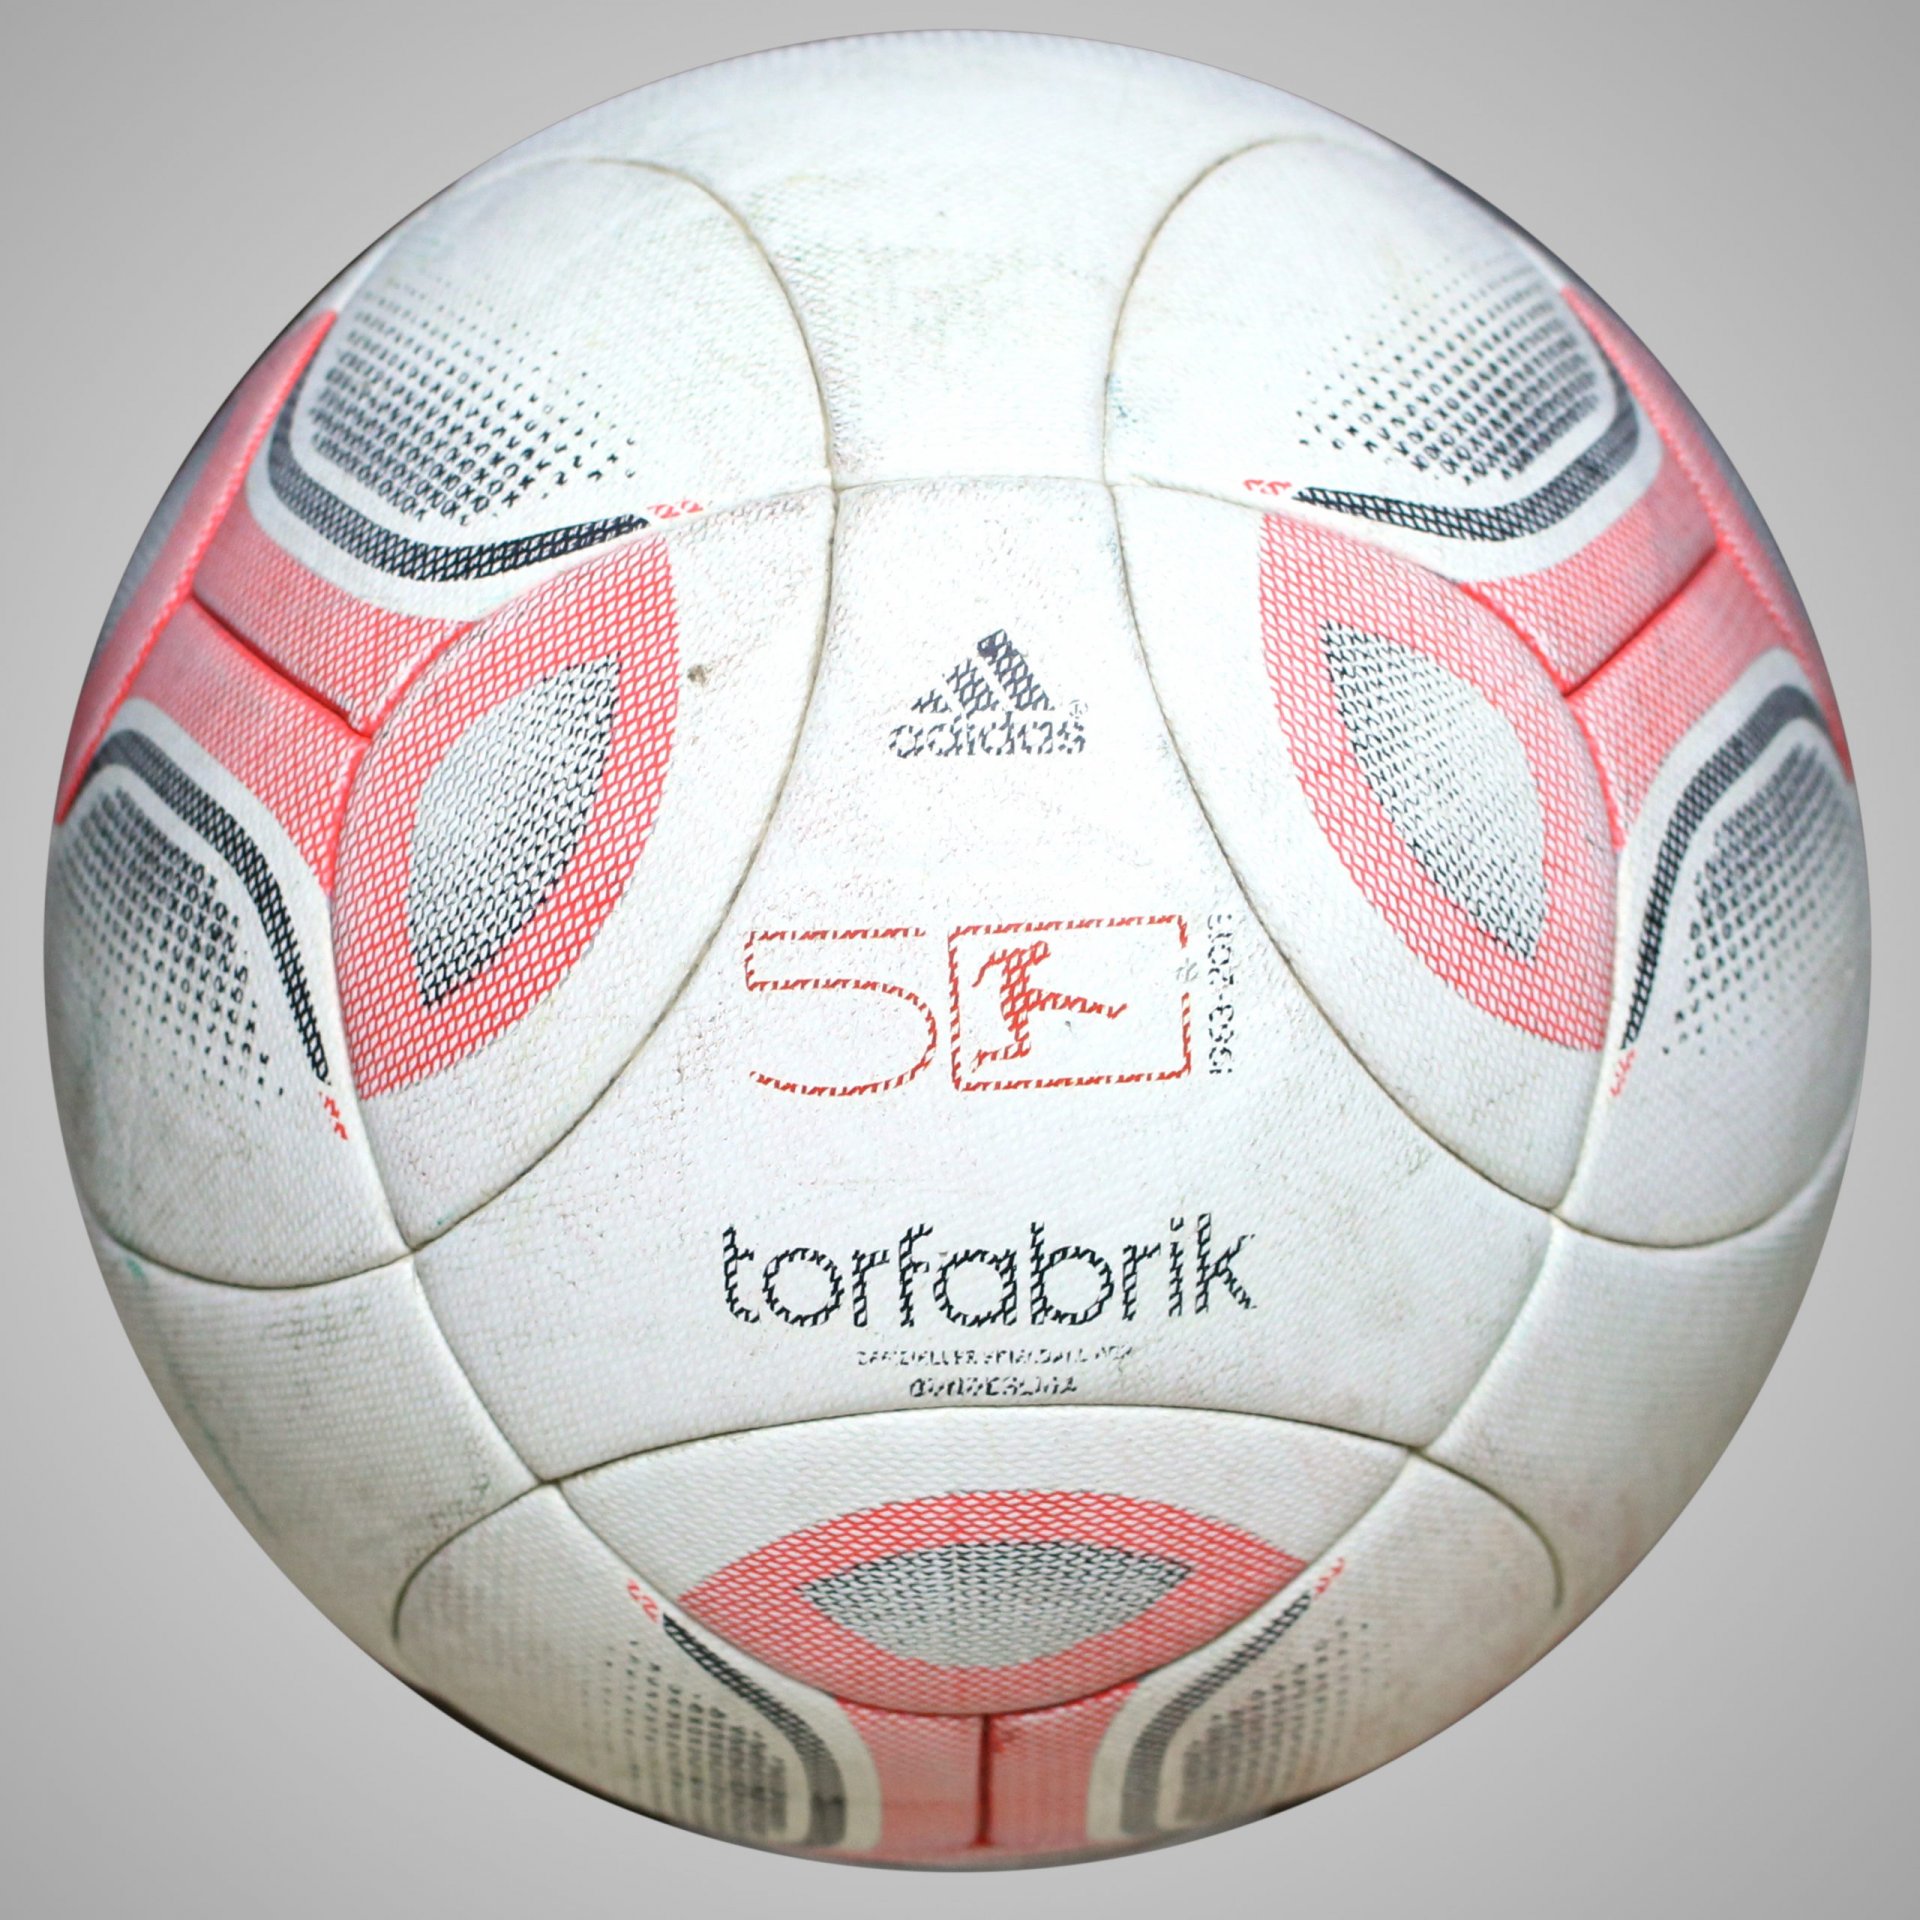 Adidas Torfabrik 2012 Official Matchball